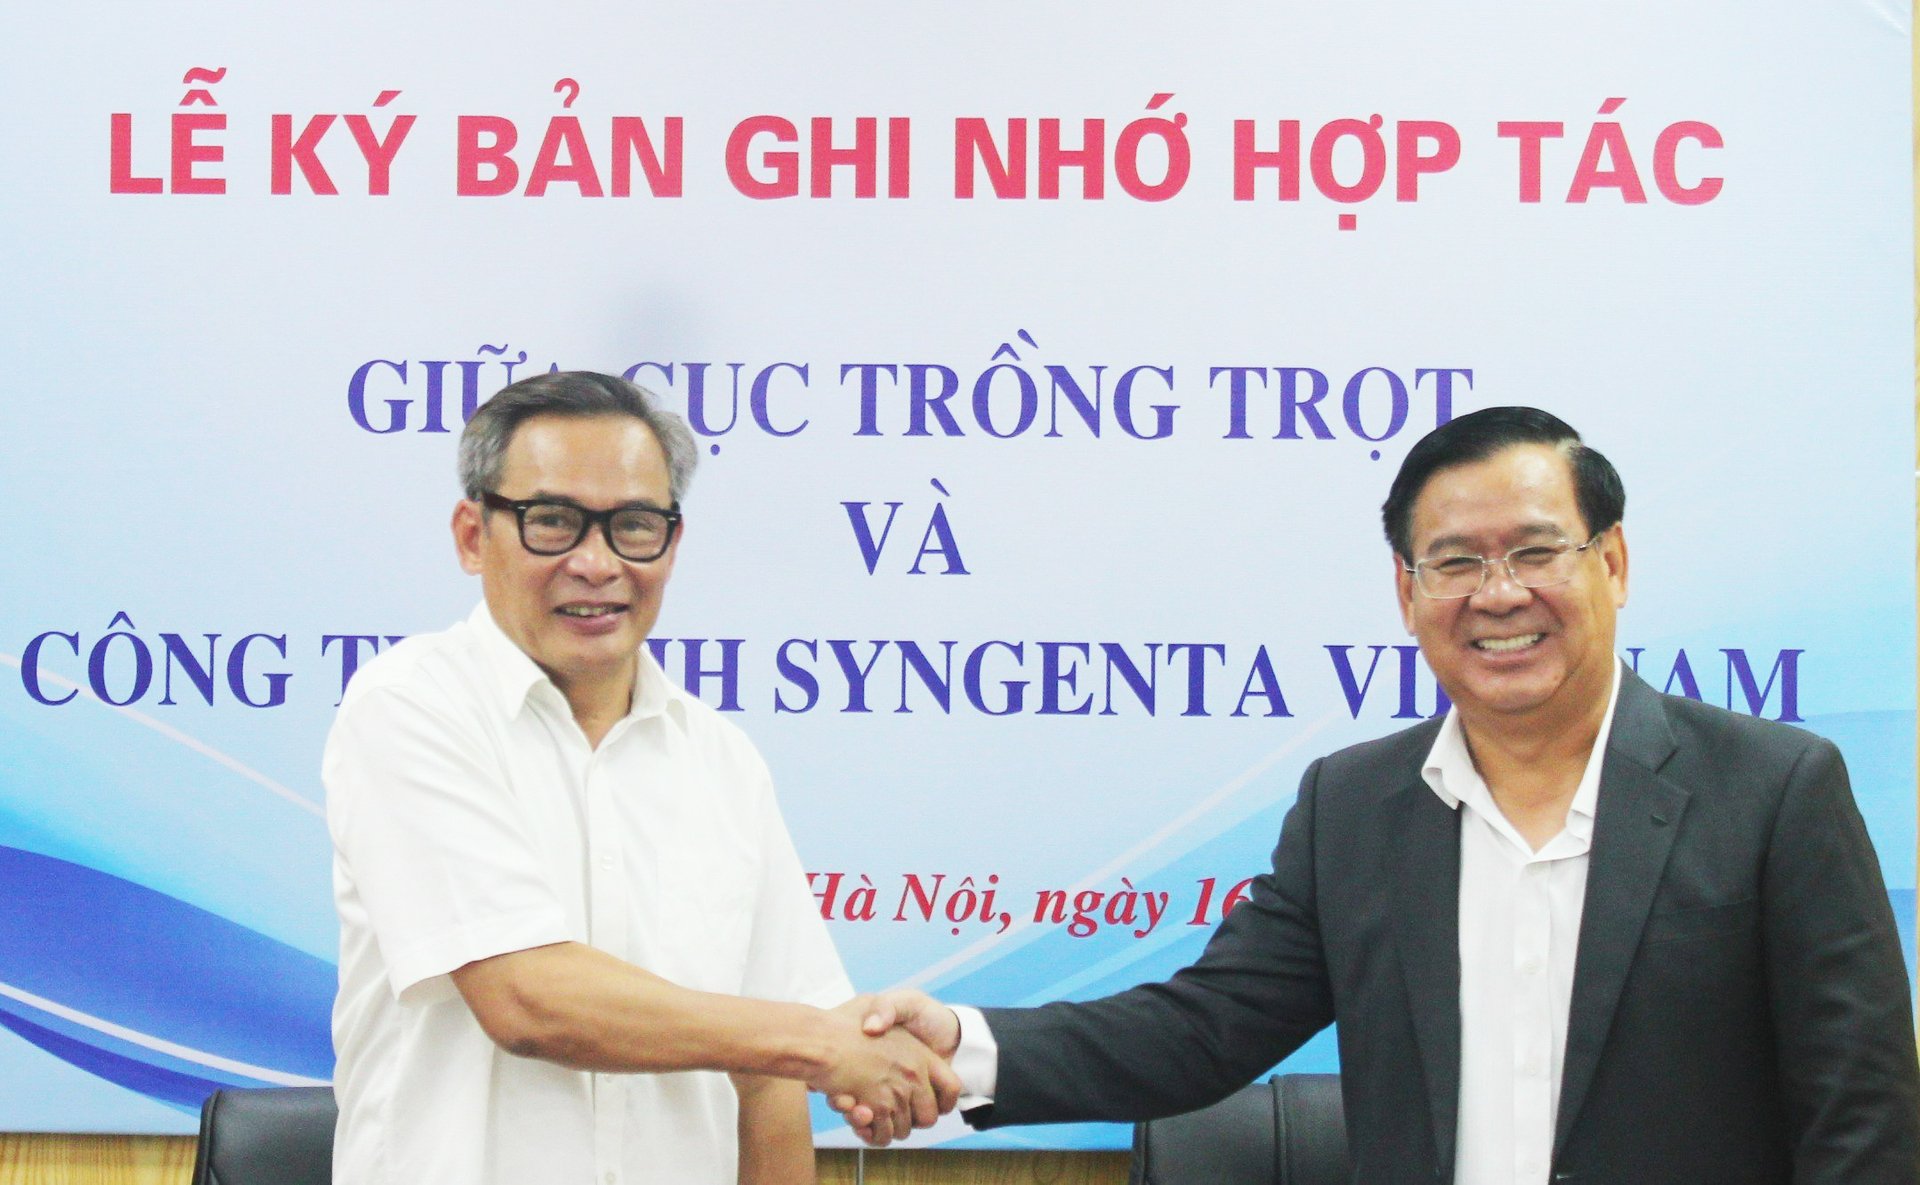 Ông Nguyễn Như Cường, Cục trưởng Cục Trồng trọt (trái) và ông Trần Thanh Vũ, Tổng Giám đốc Công ty TNHH Syngenta Việt Nam ký biên bản hợp tác. Ảnh: CTT.